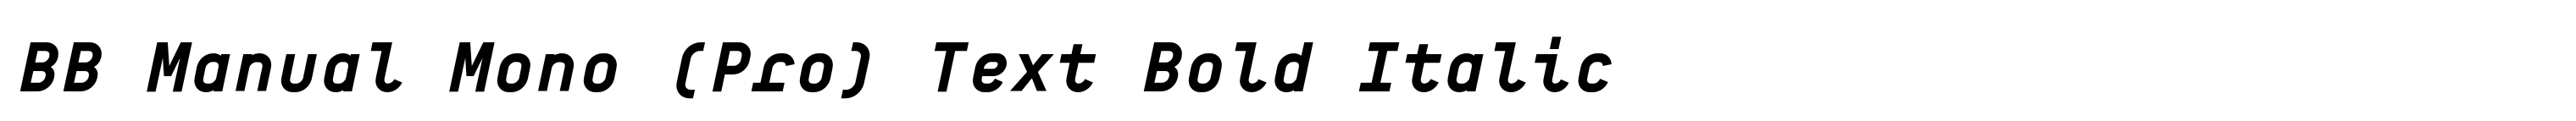 BB Manual Mono (Pro) Text Bold Italic